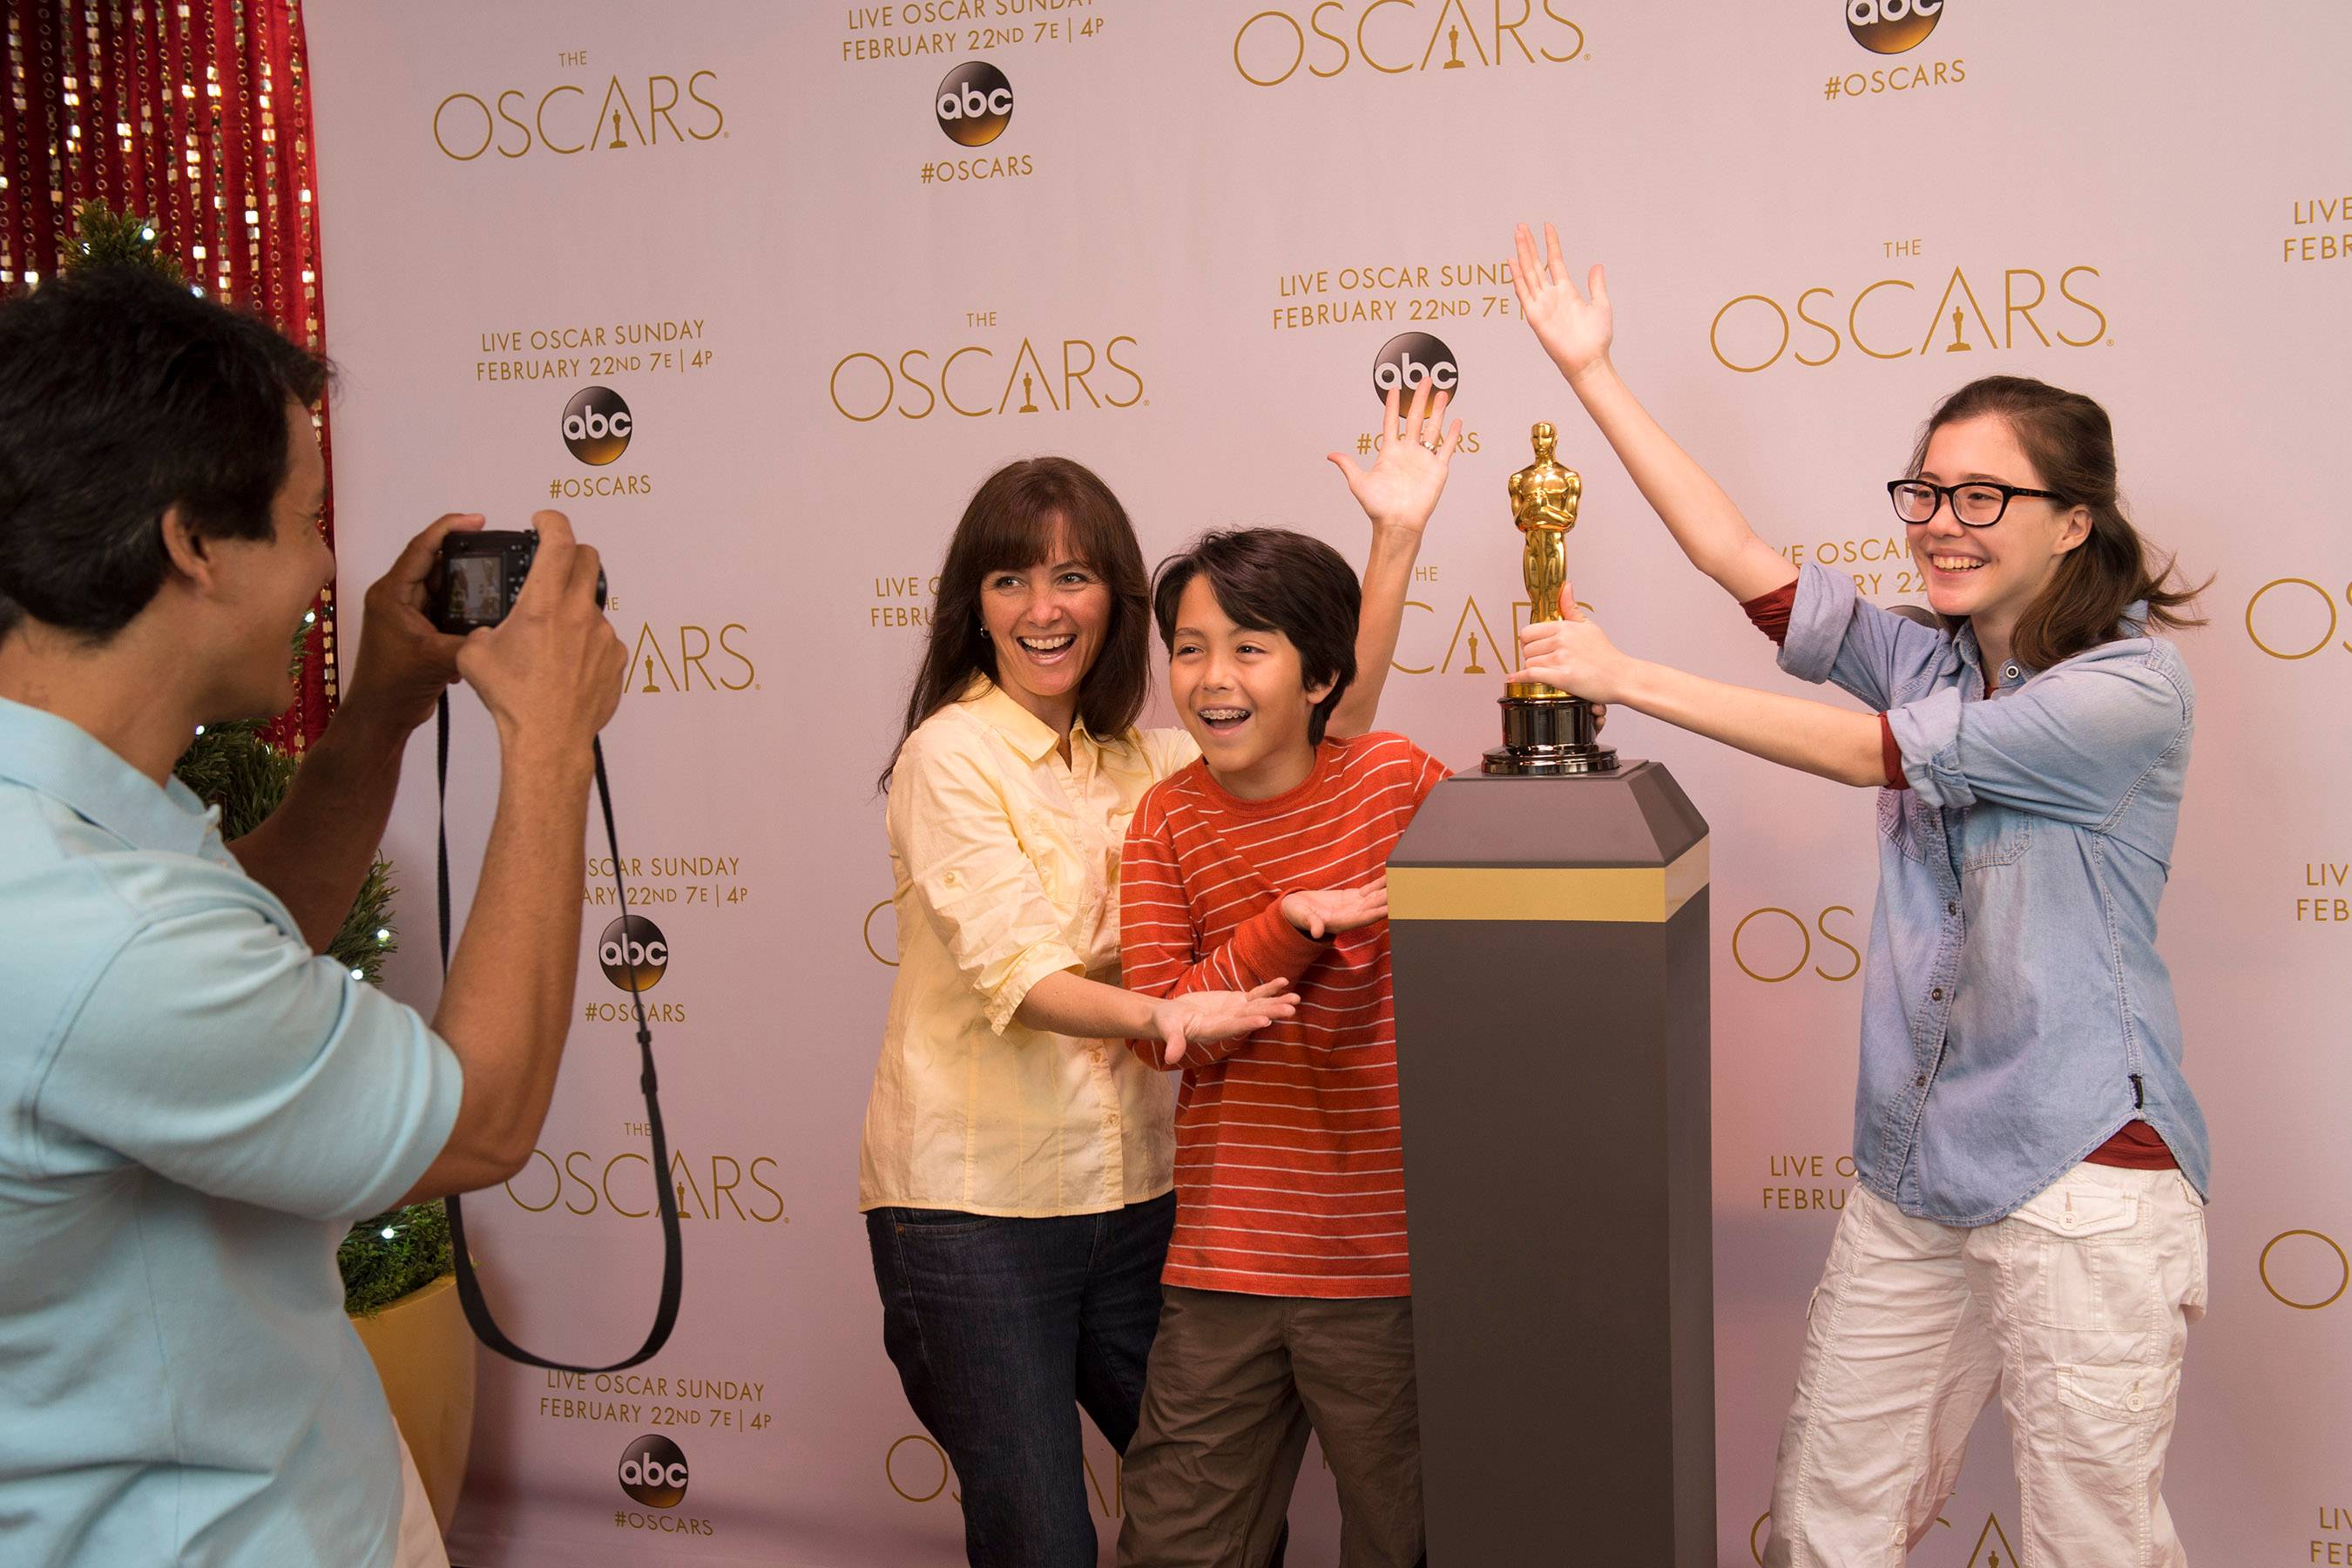 Pose with an Oscar